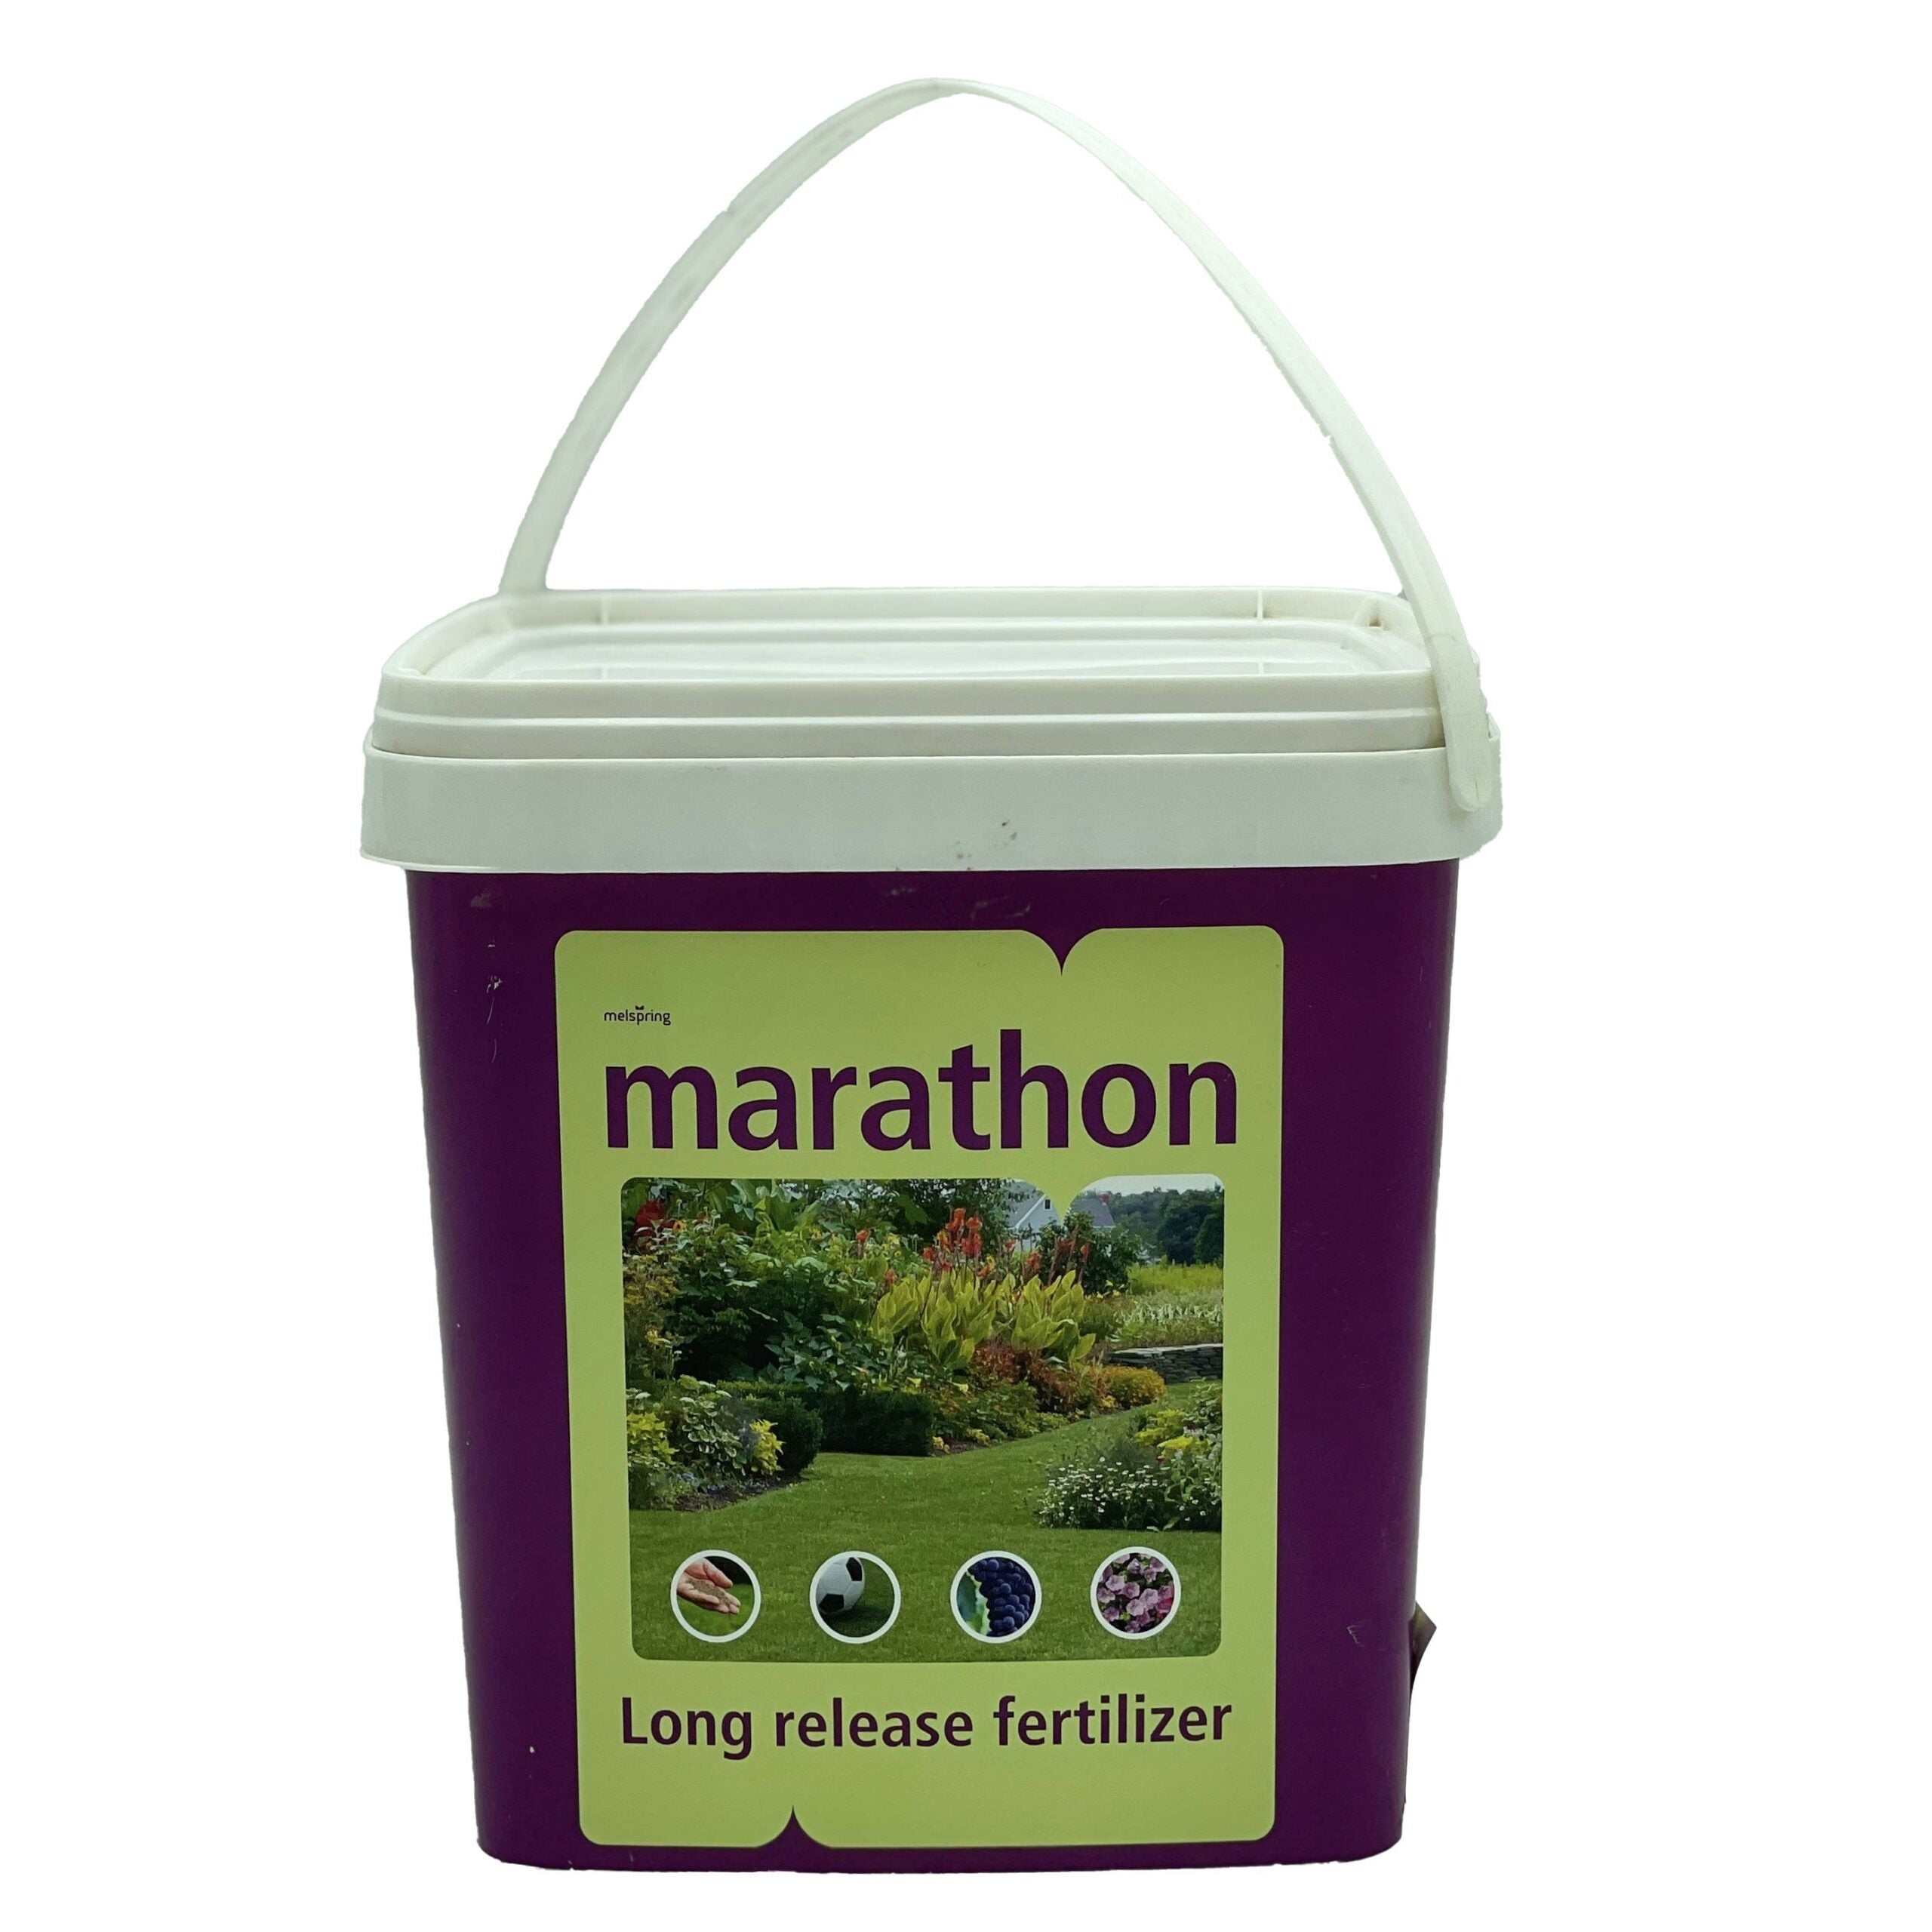 Melspring Marathon Long Release Fertilizer | 3.5kg